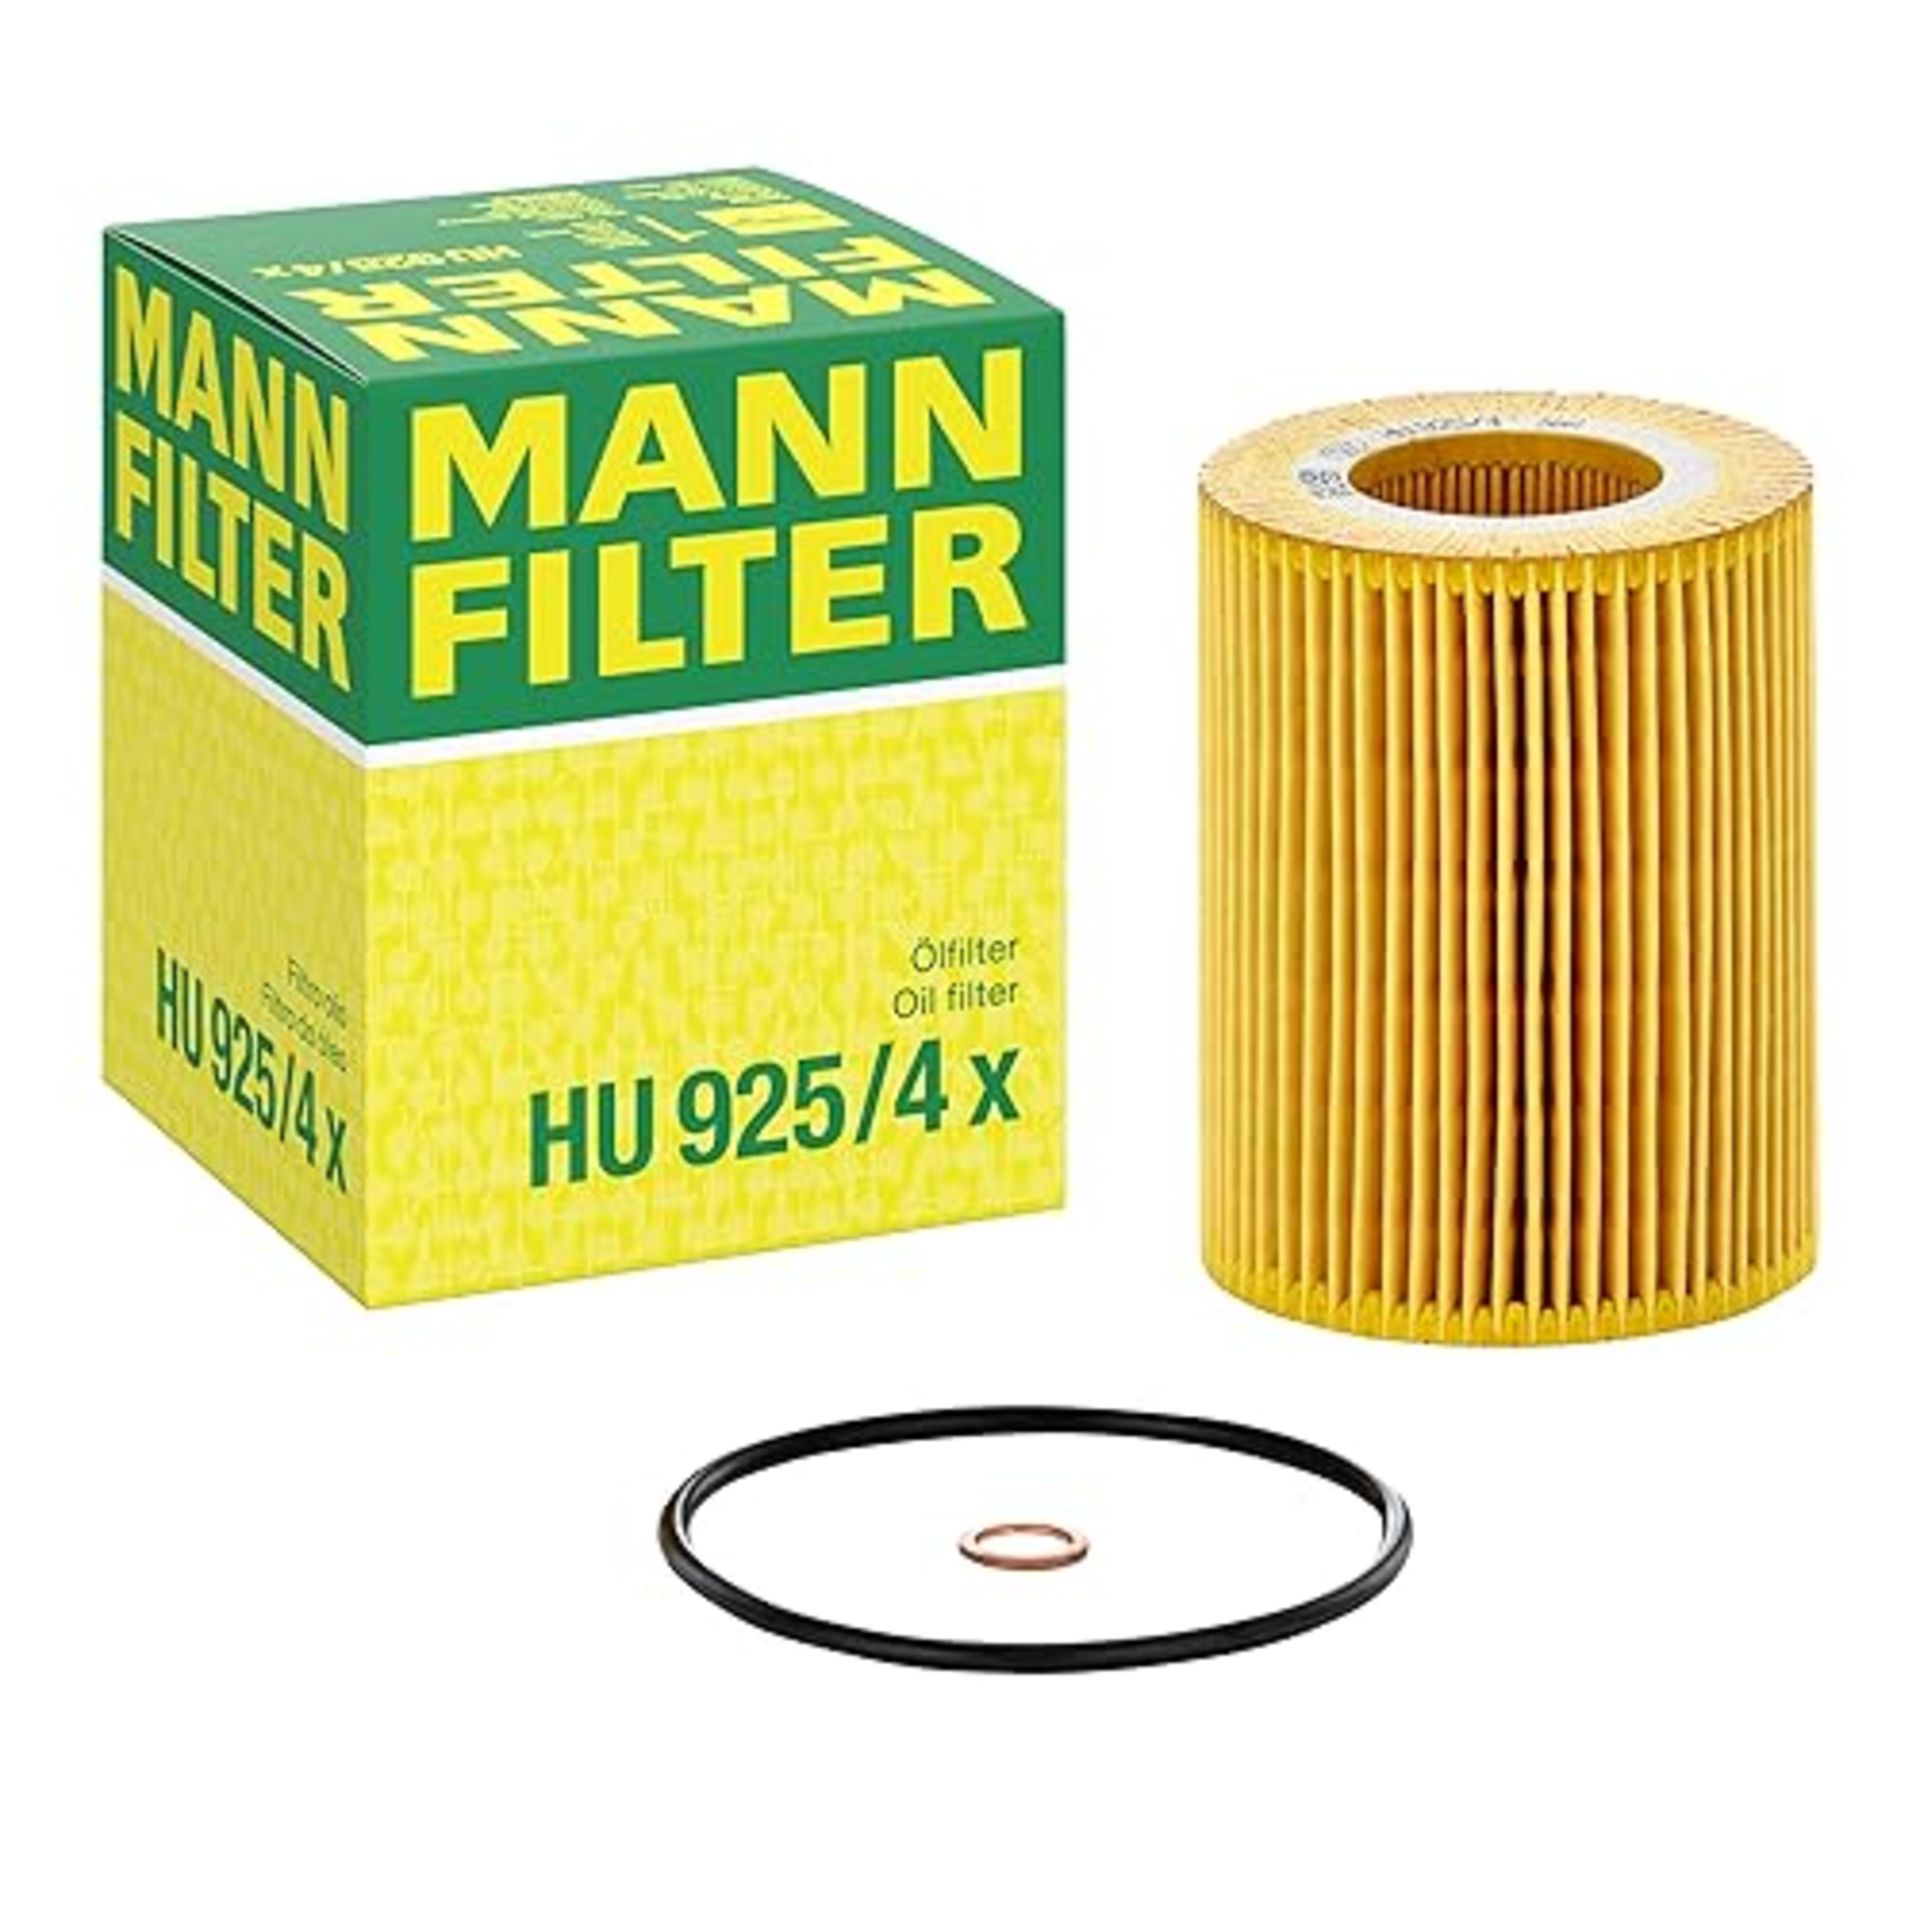 MANN-FILTER HU 925/4 X Oil filter evotop – For Passenger Cars